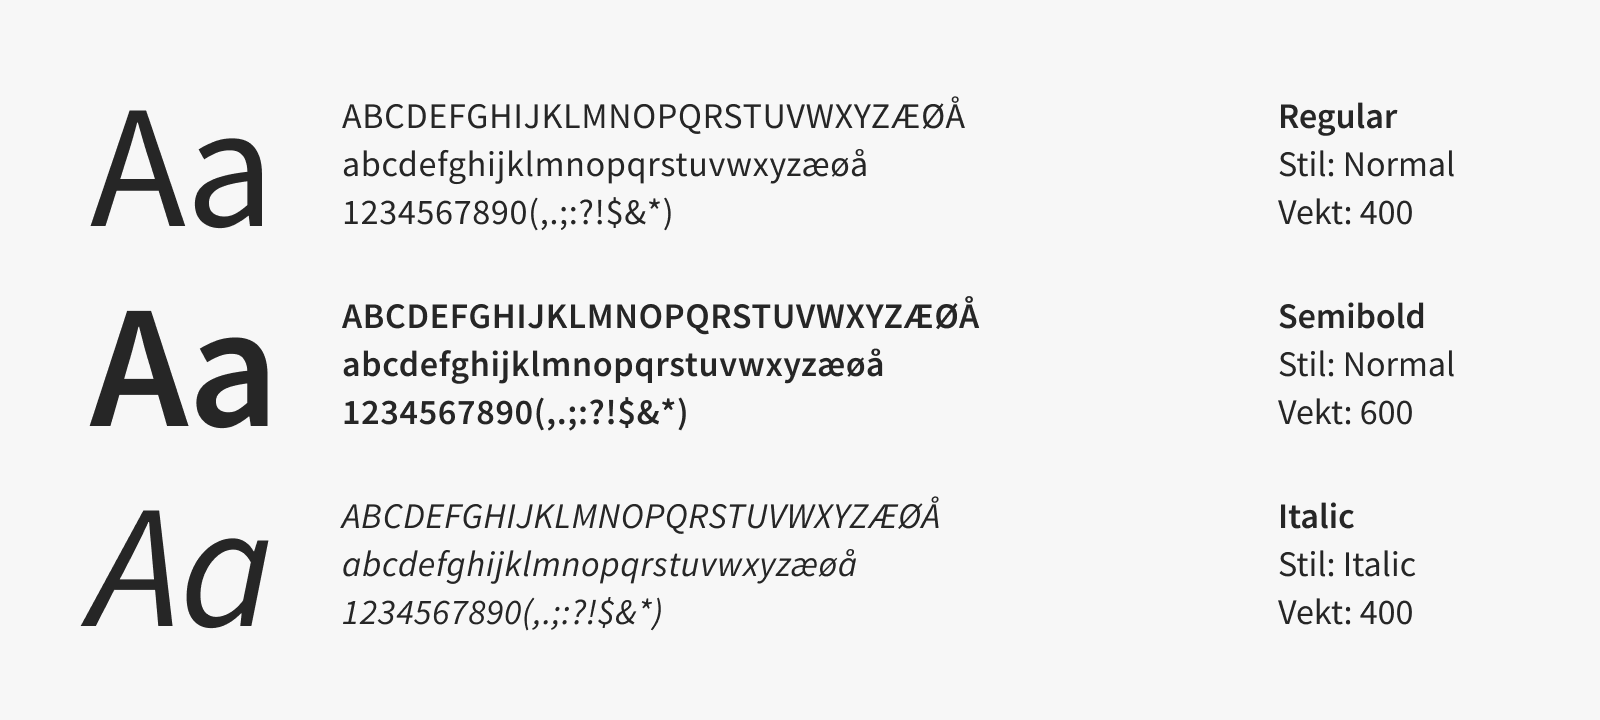 Skjermbilde som viser de ulike variantene av Source Sans 3 vi bruker i NAV.